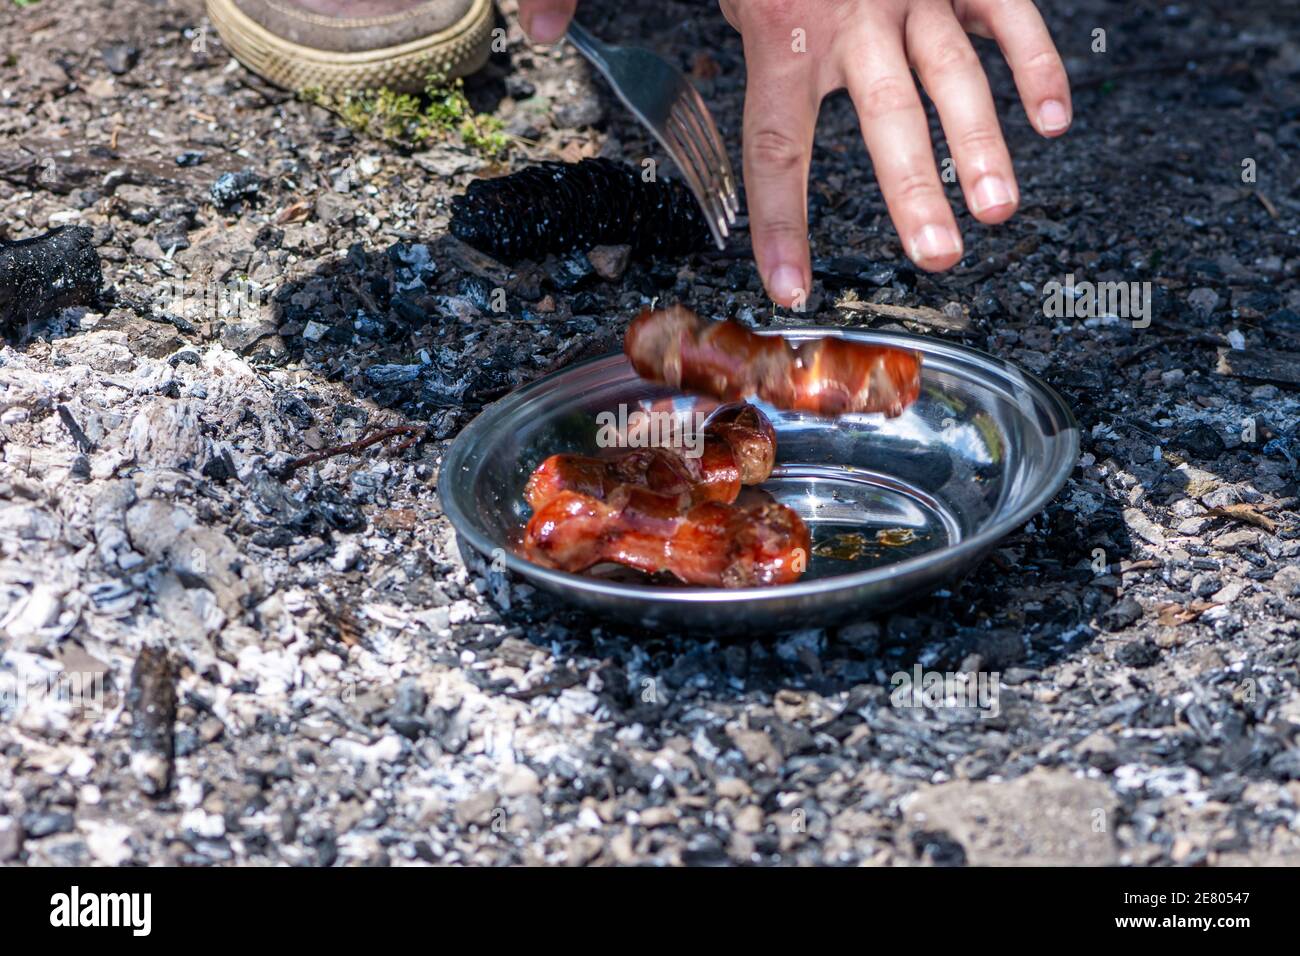 Main de l'homme mettant des saucisses grillées sur l'assiette en mouvement flou Banque D'Images